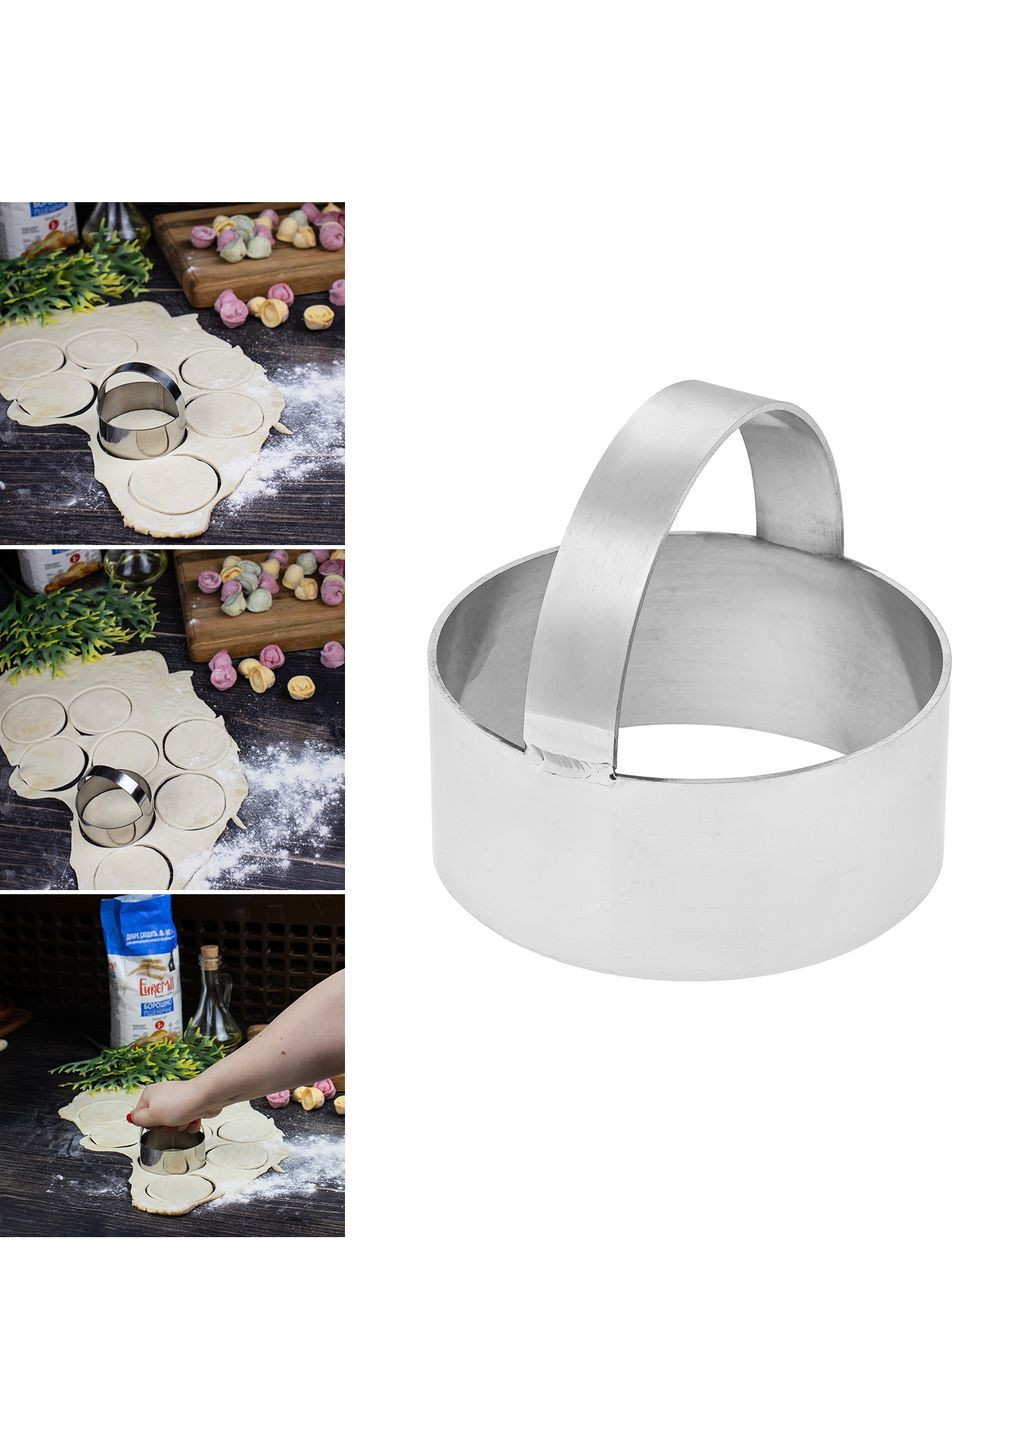 Металлическая форма кольцо с ручкой для вырезки теста (вареников, пельменей, печенья) Ø 8 см Metalworkshop (269236500)